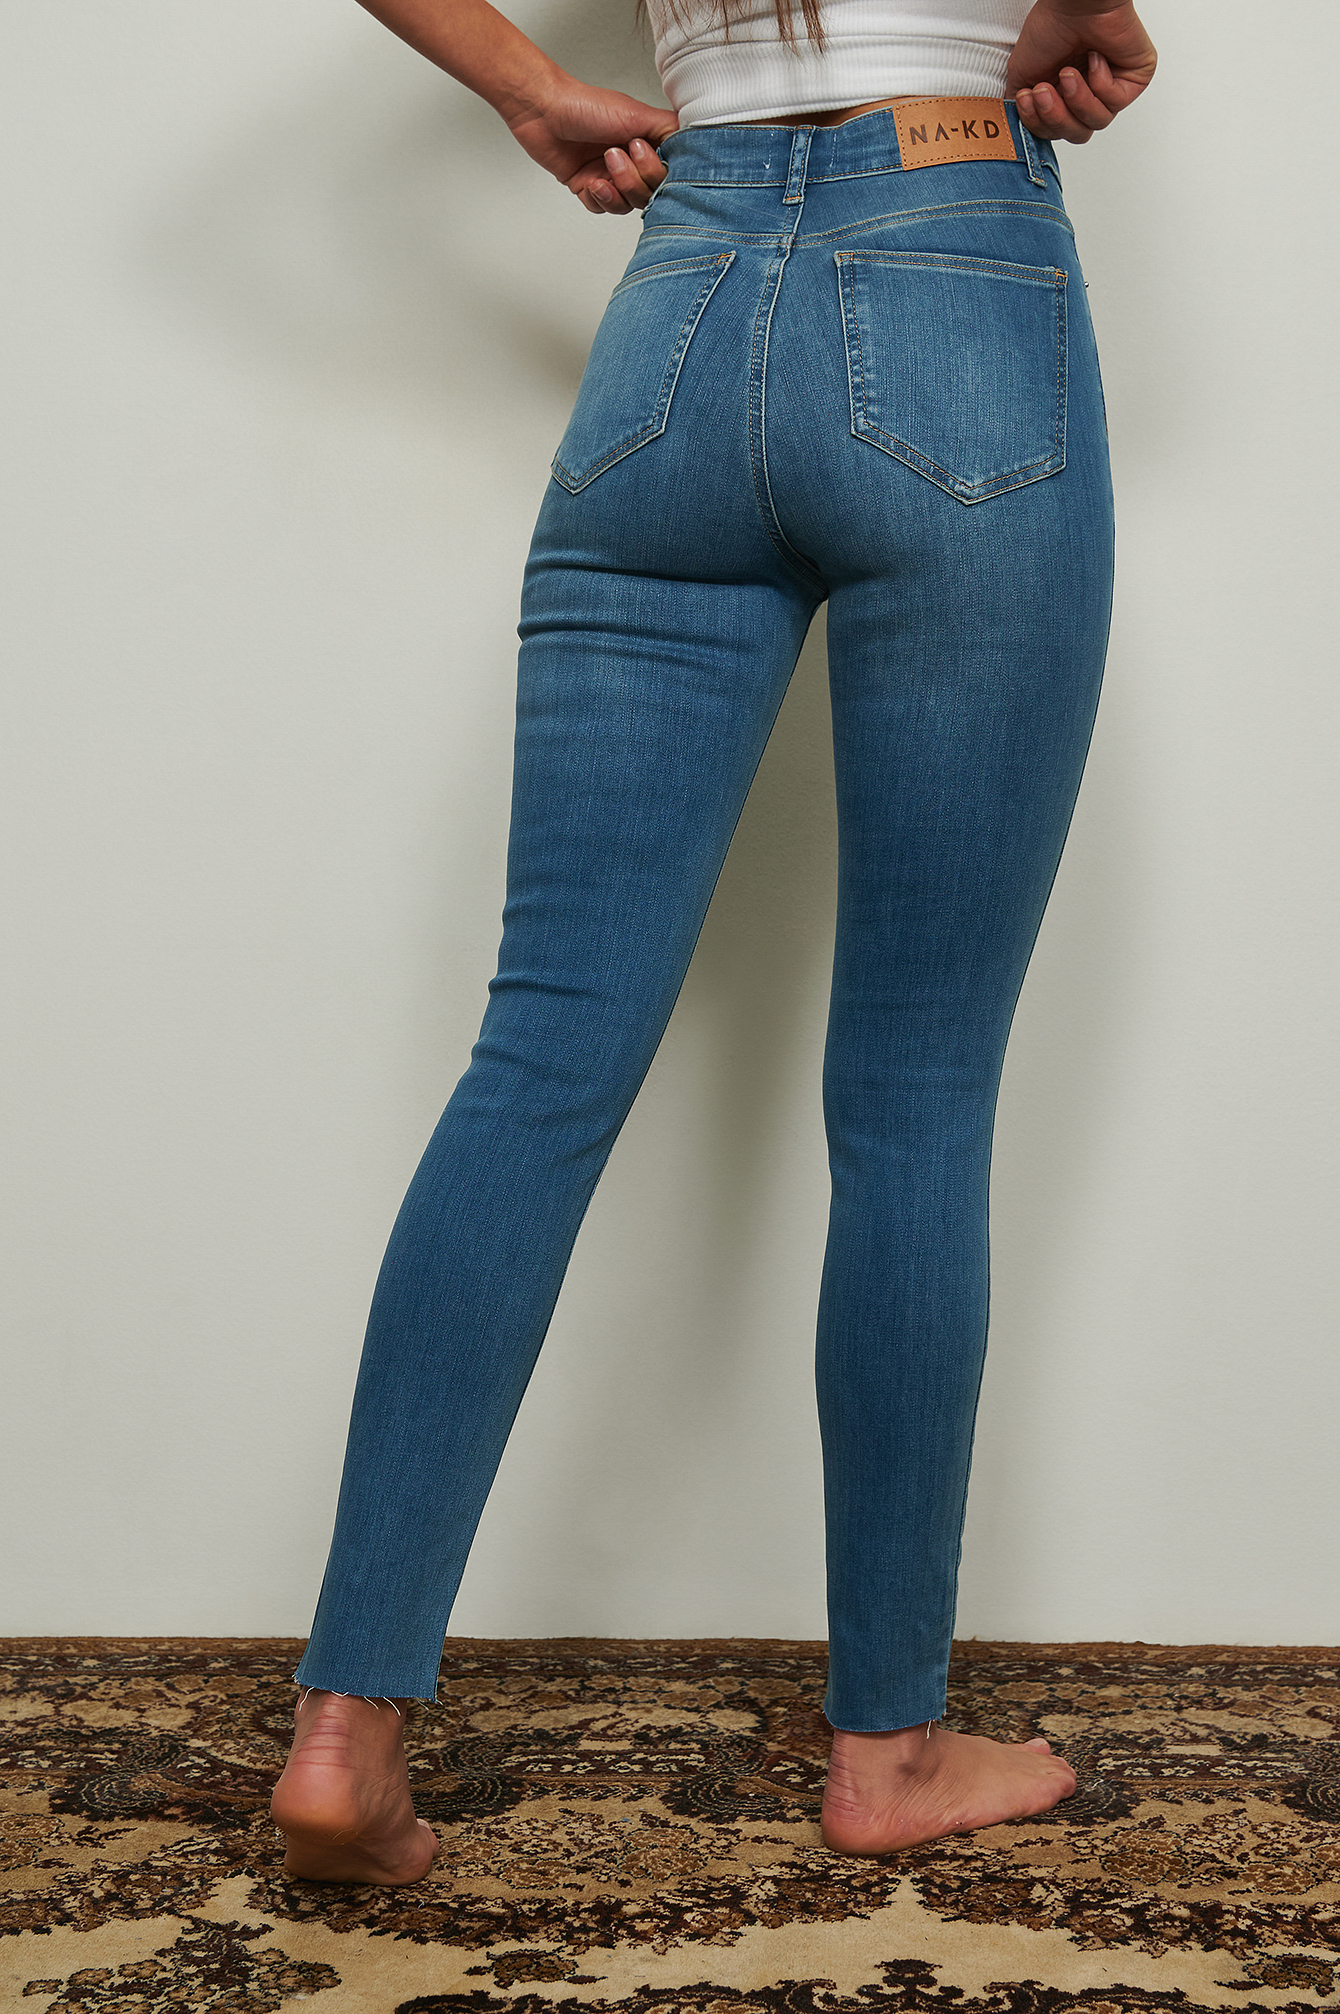 Asos Femme Vêtements Pantalons & Jeans Jeans Taille haute Petite Jean basique super skinny taille haute clair 